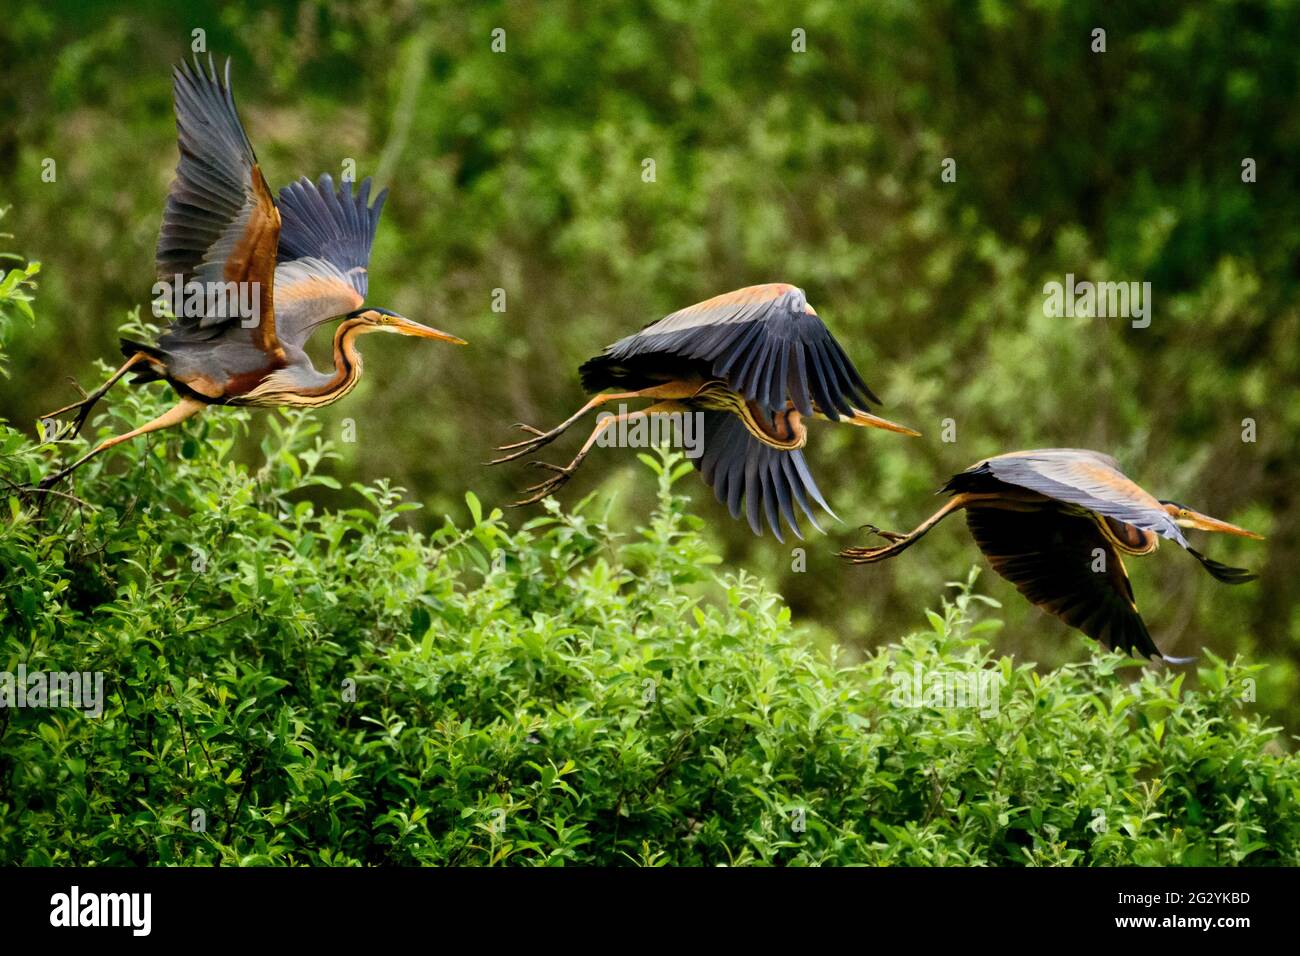 Ardea purpurea heron flight sequence Stock Photo